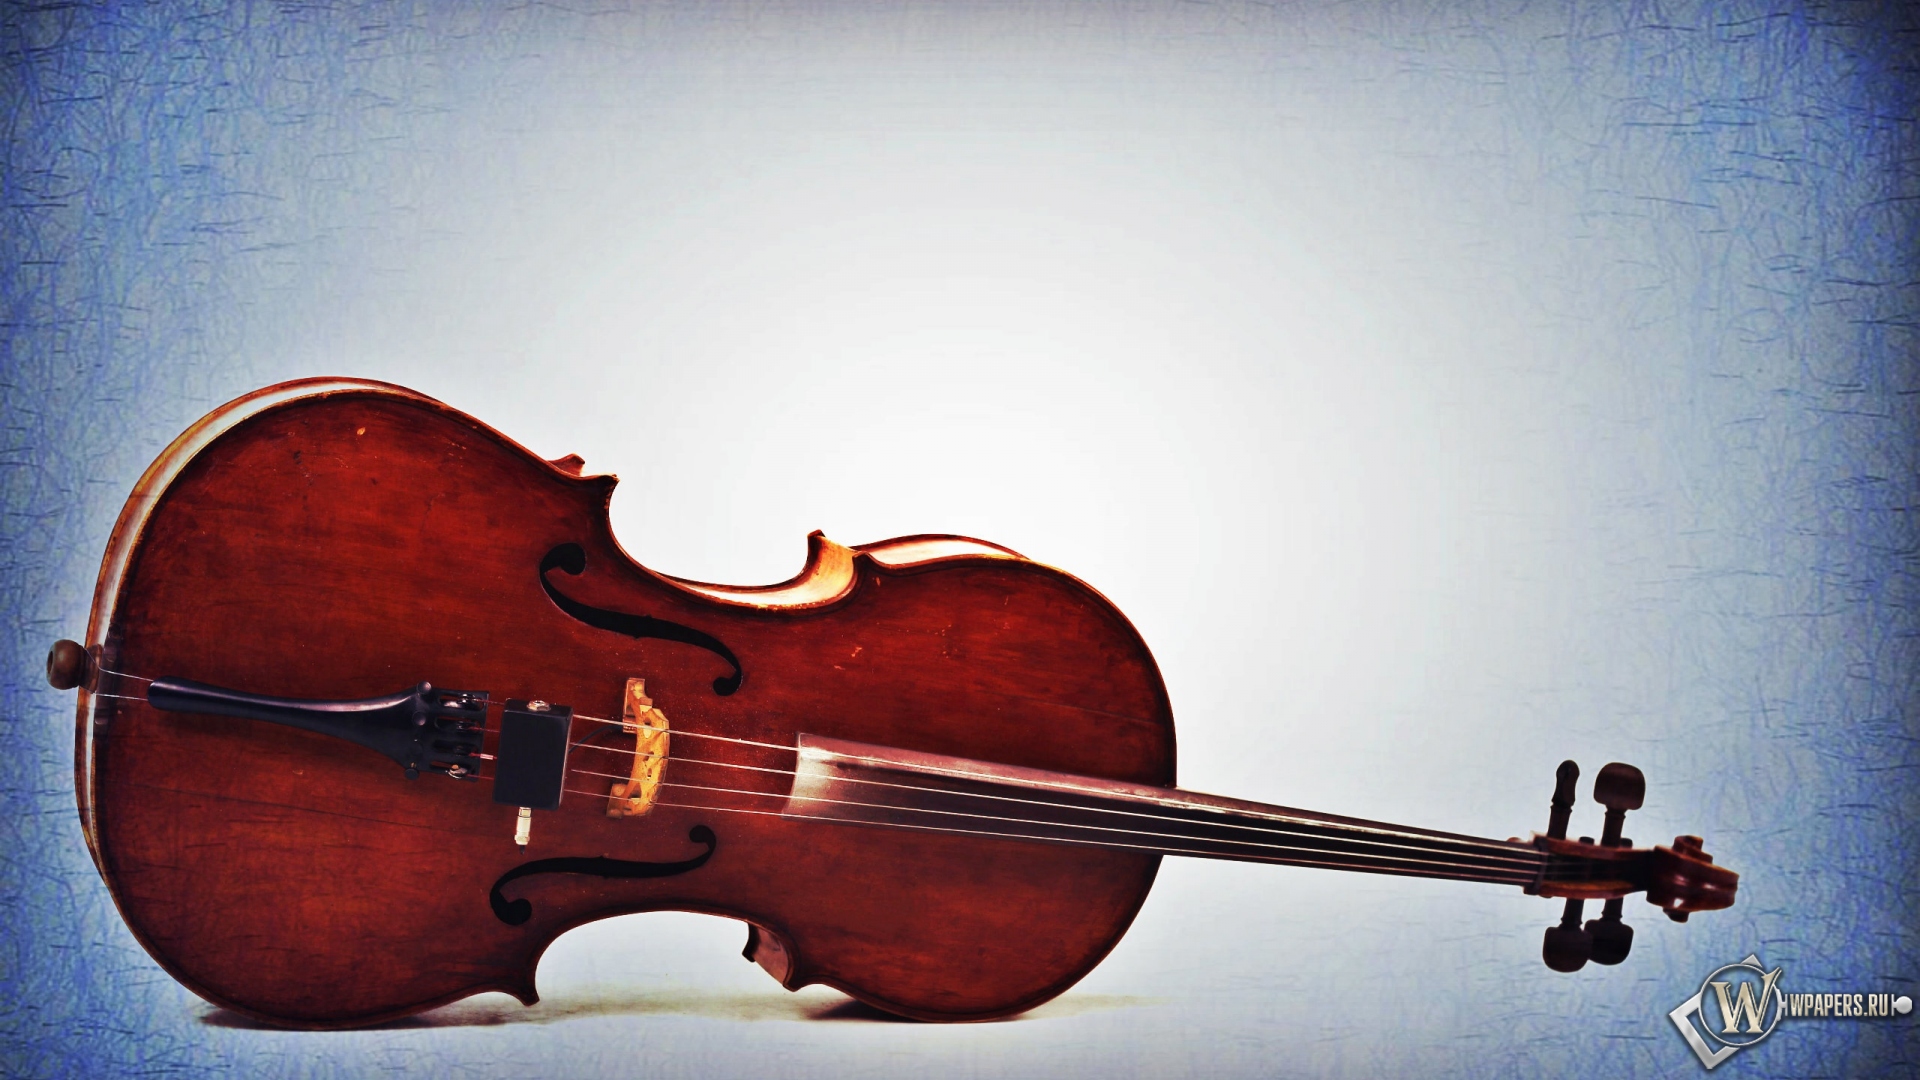 Старая виолончель  1920x1080